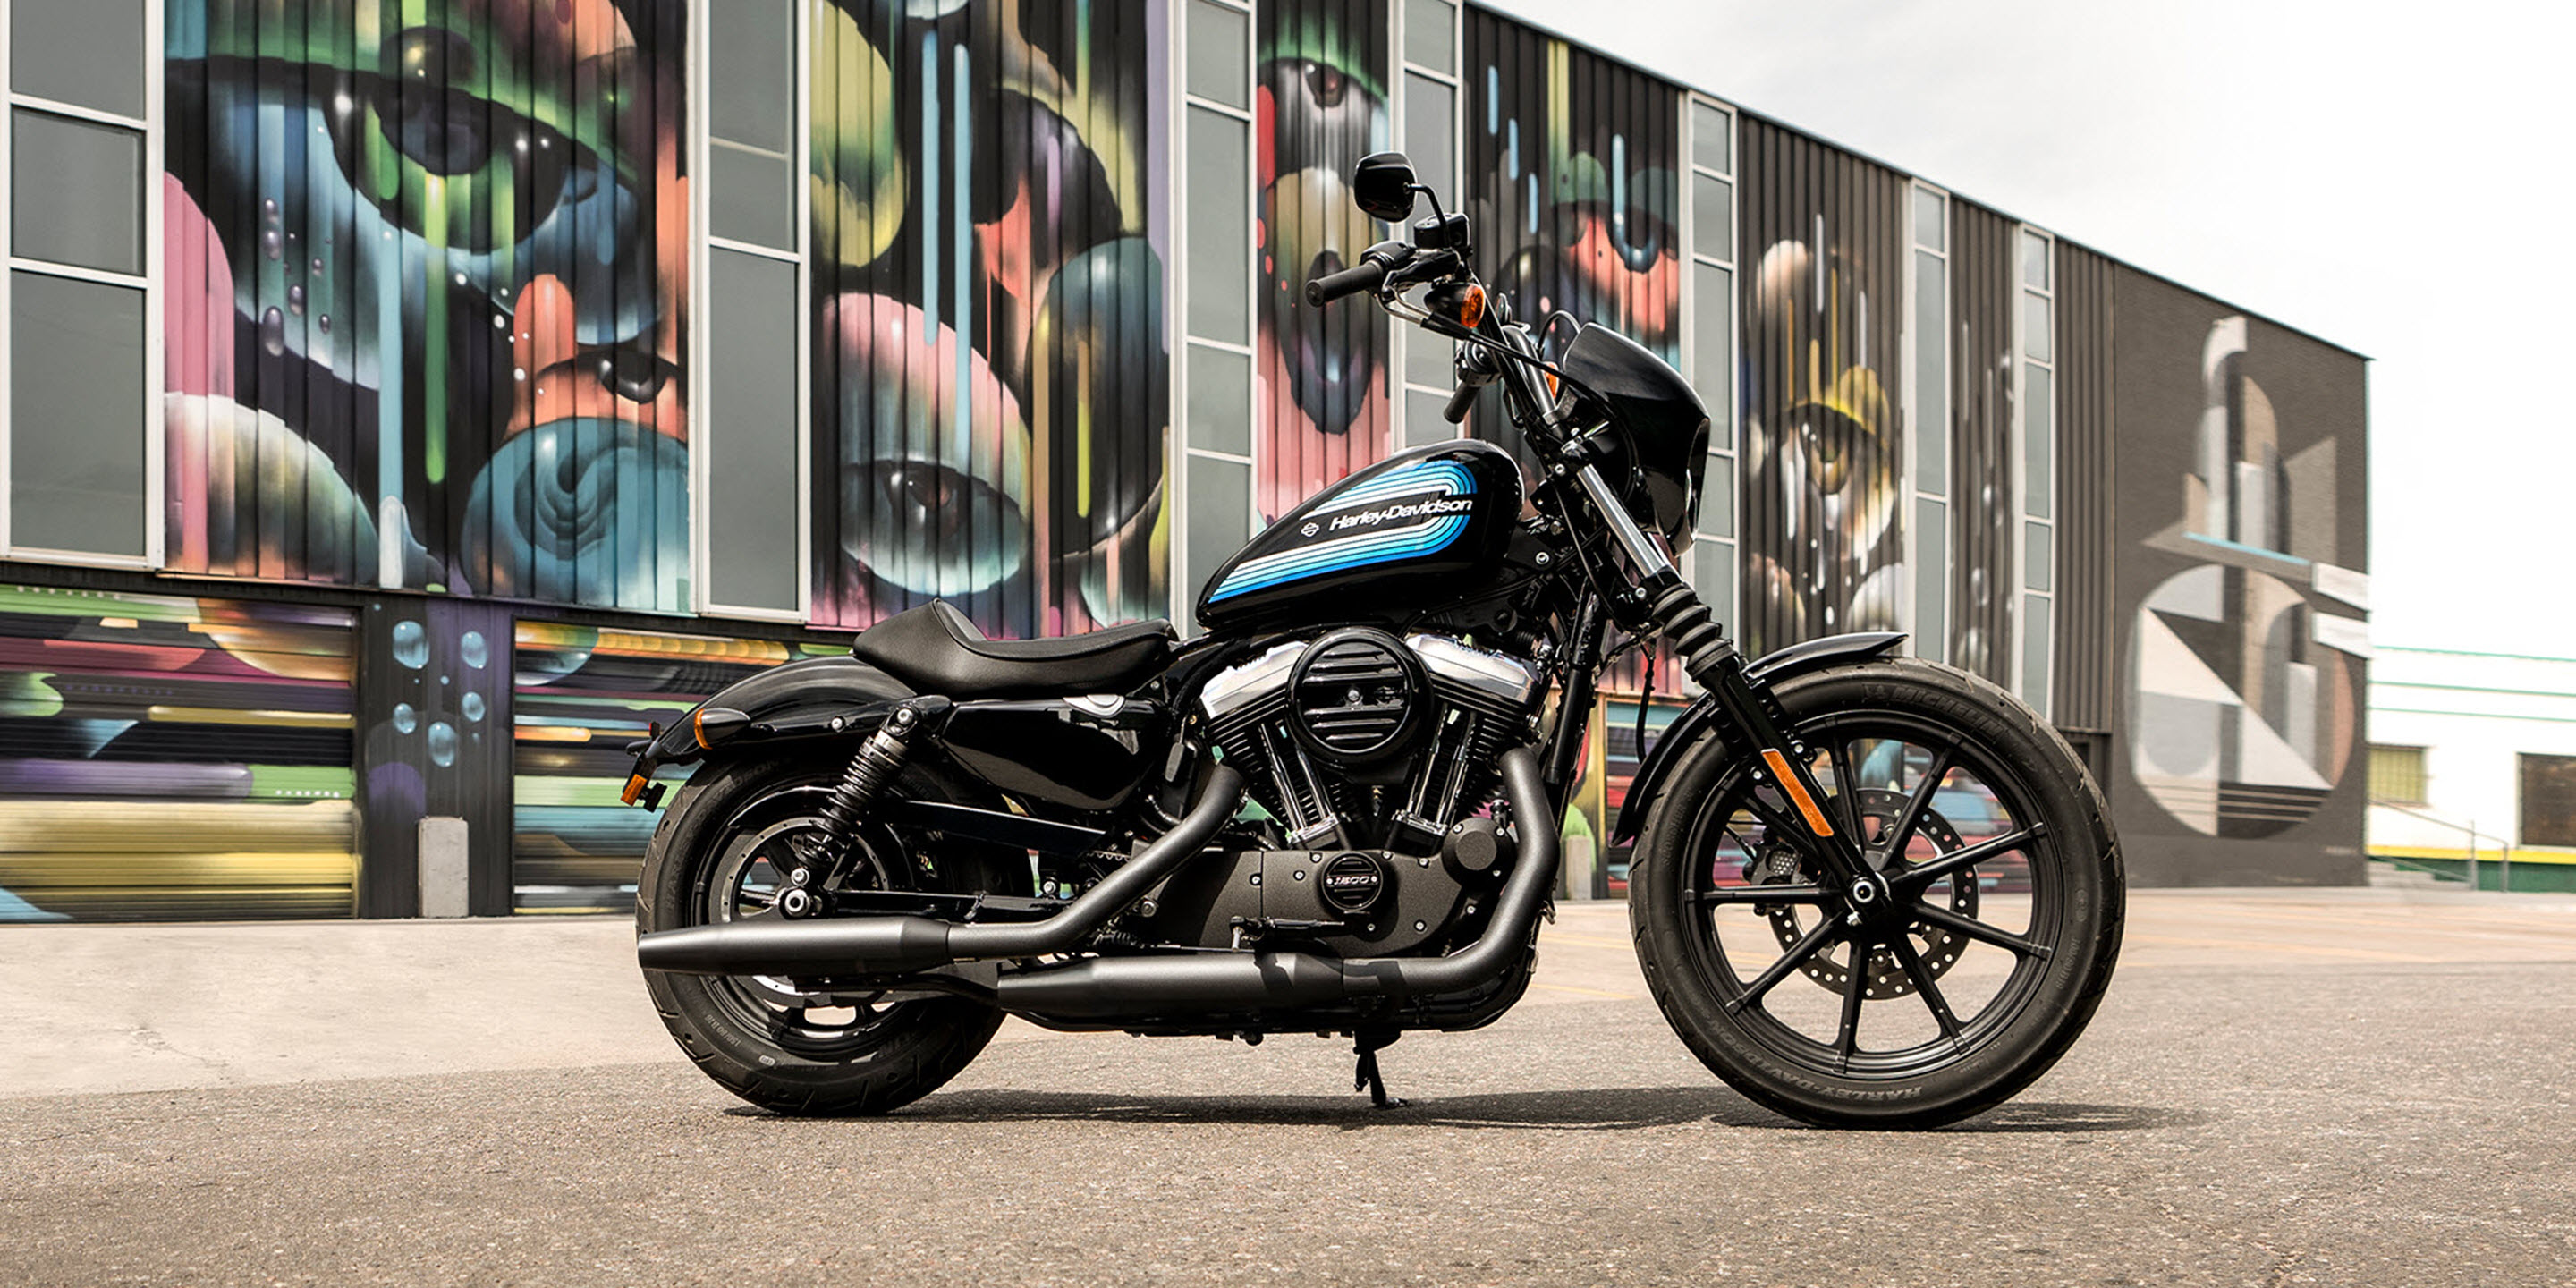   Iron 1200  2019  Harley  Davidson  Thailand 